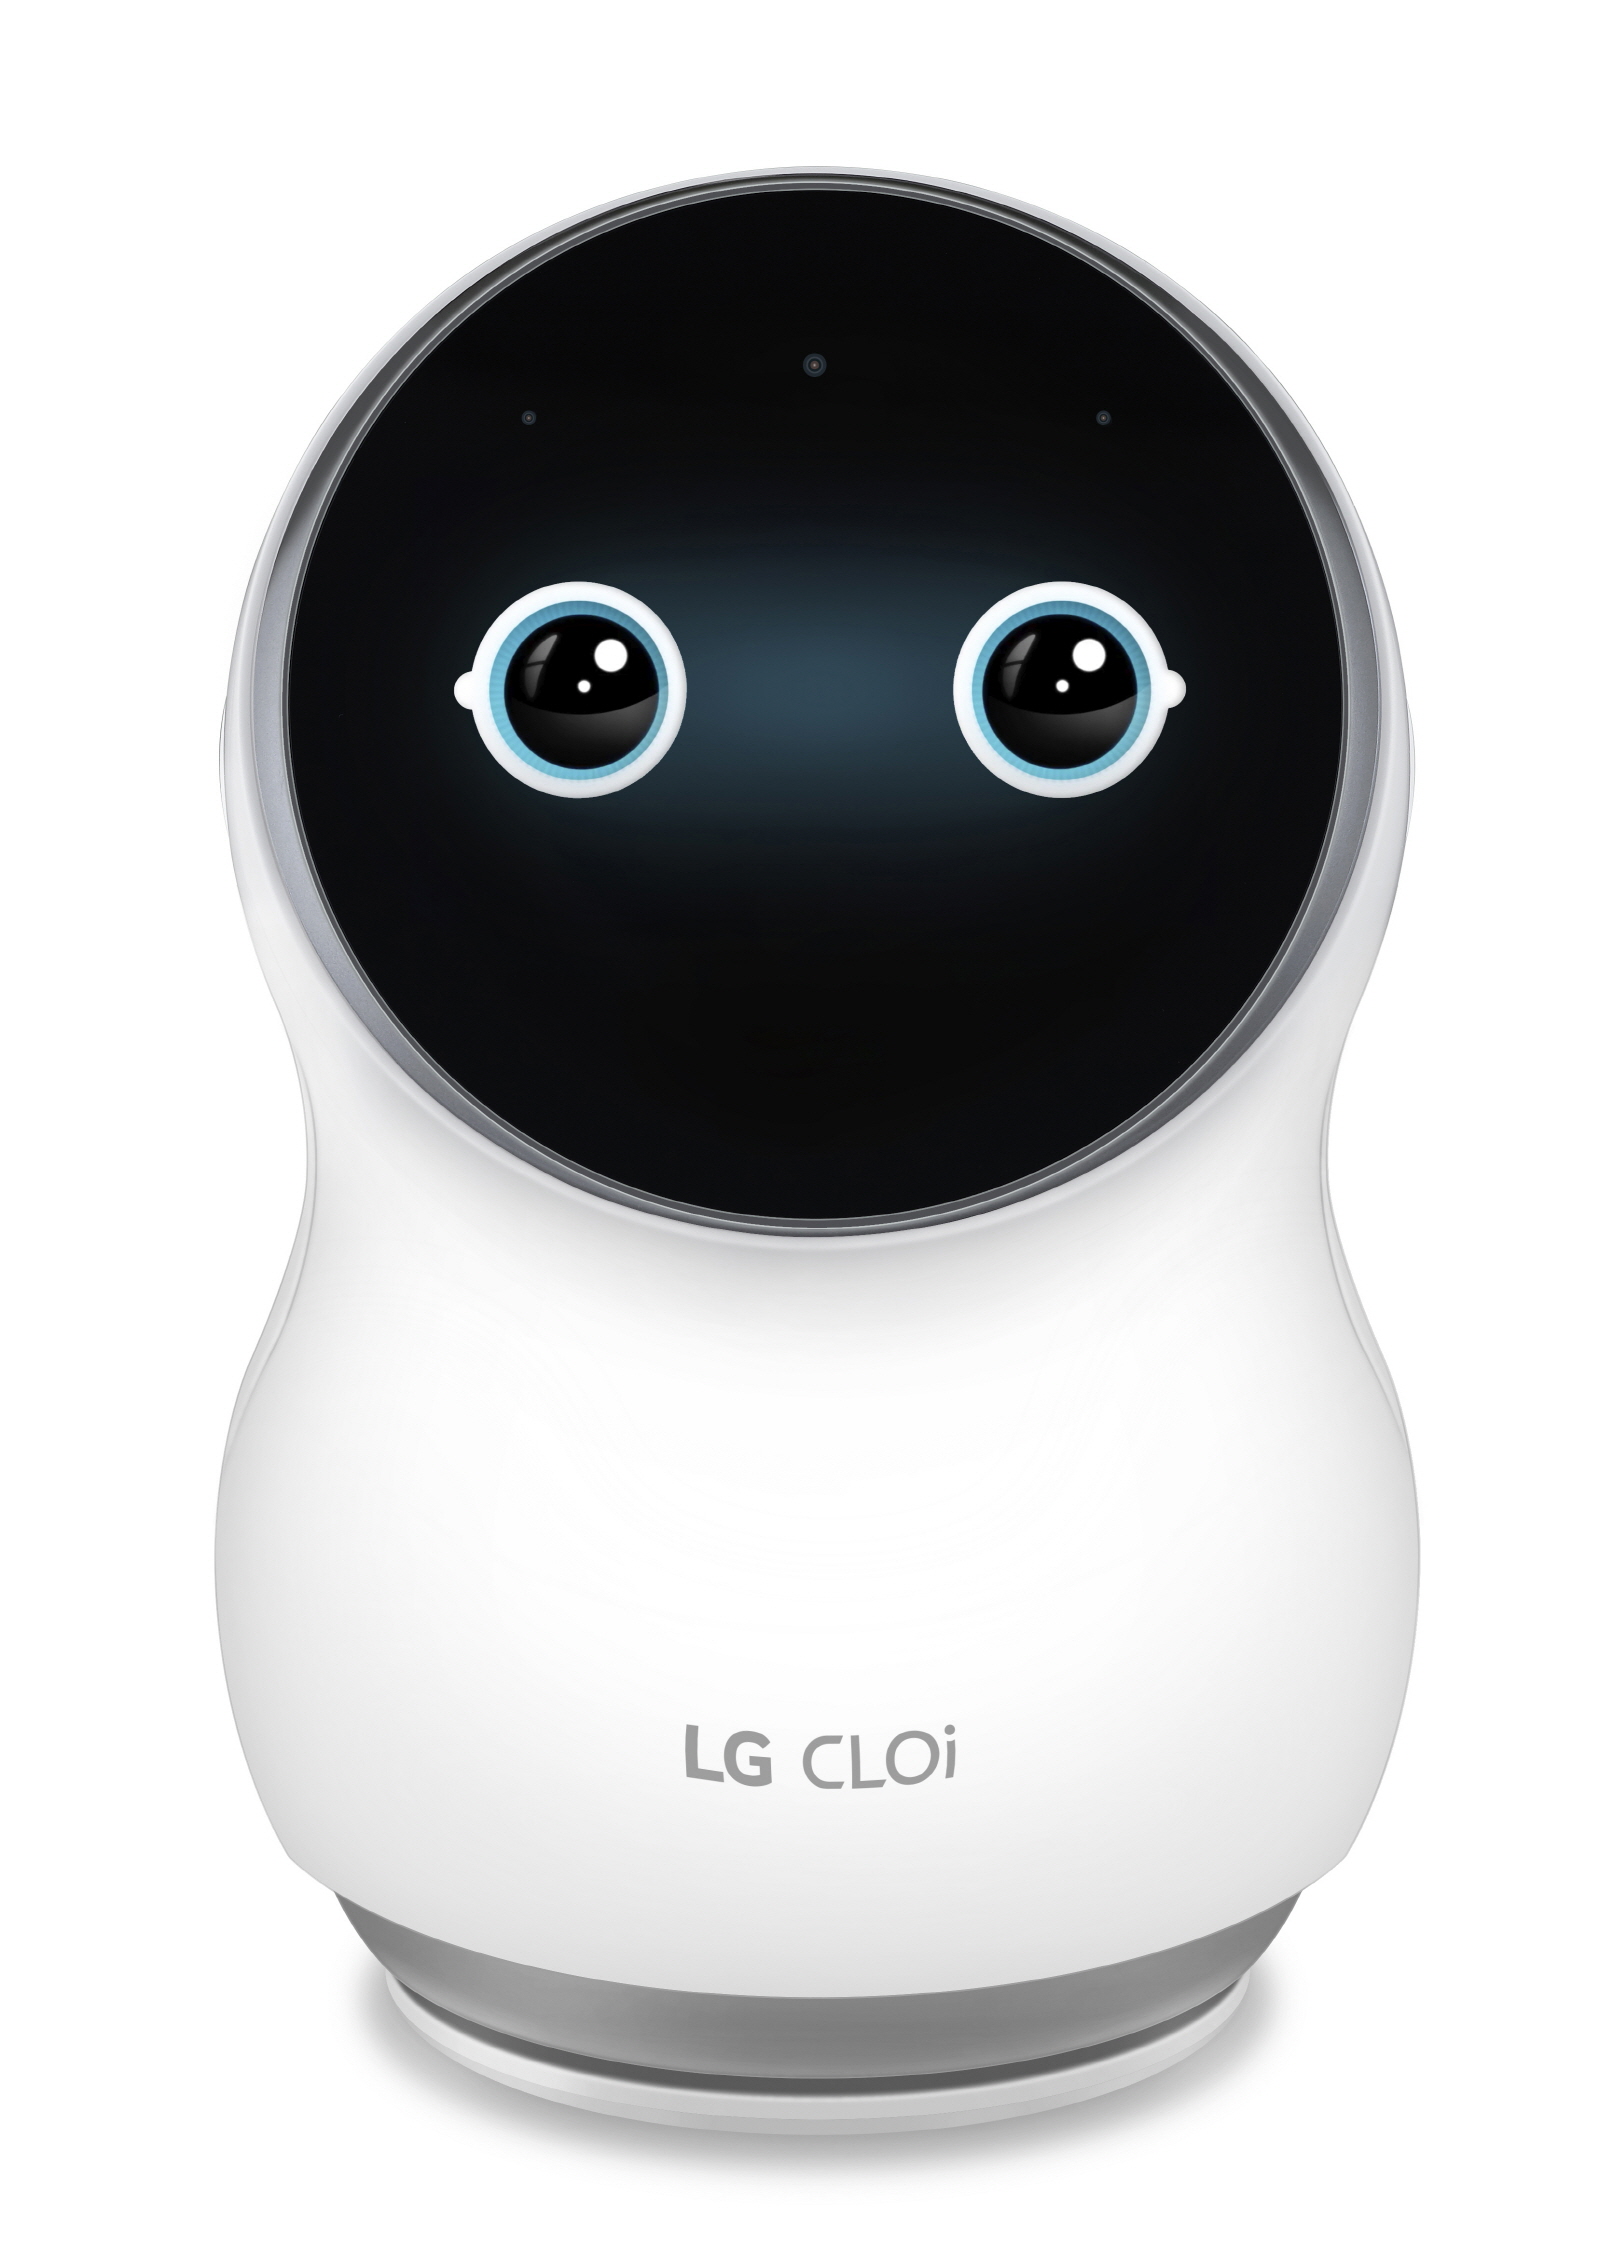  LG전자가 16일부터 인공지능 홈로봇 ‘LG 클로이’(사진)를 CJ오쇼핑에서 ‘아들과딸북클럽 LG 클로이’ 패키지 상품으로 판매한다.